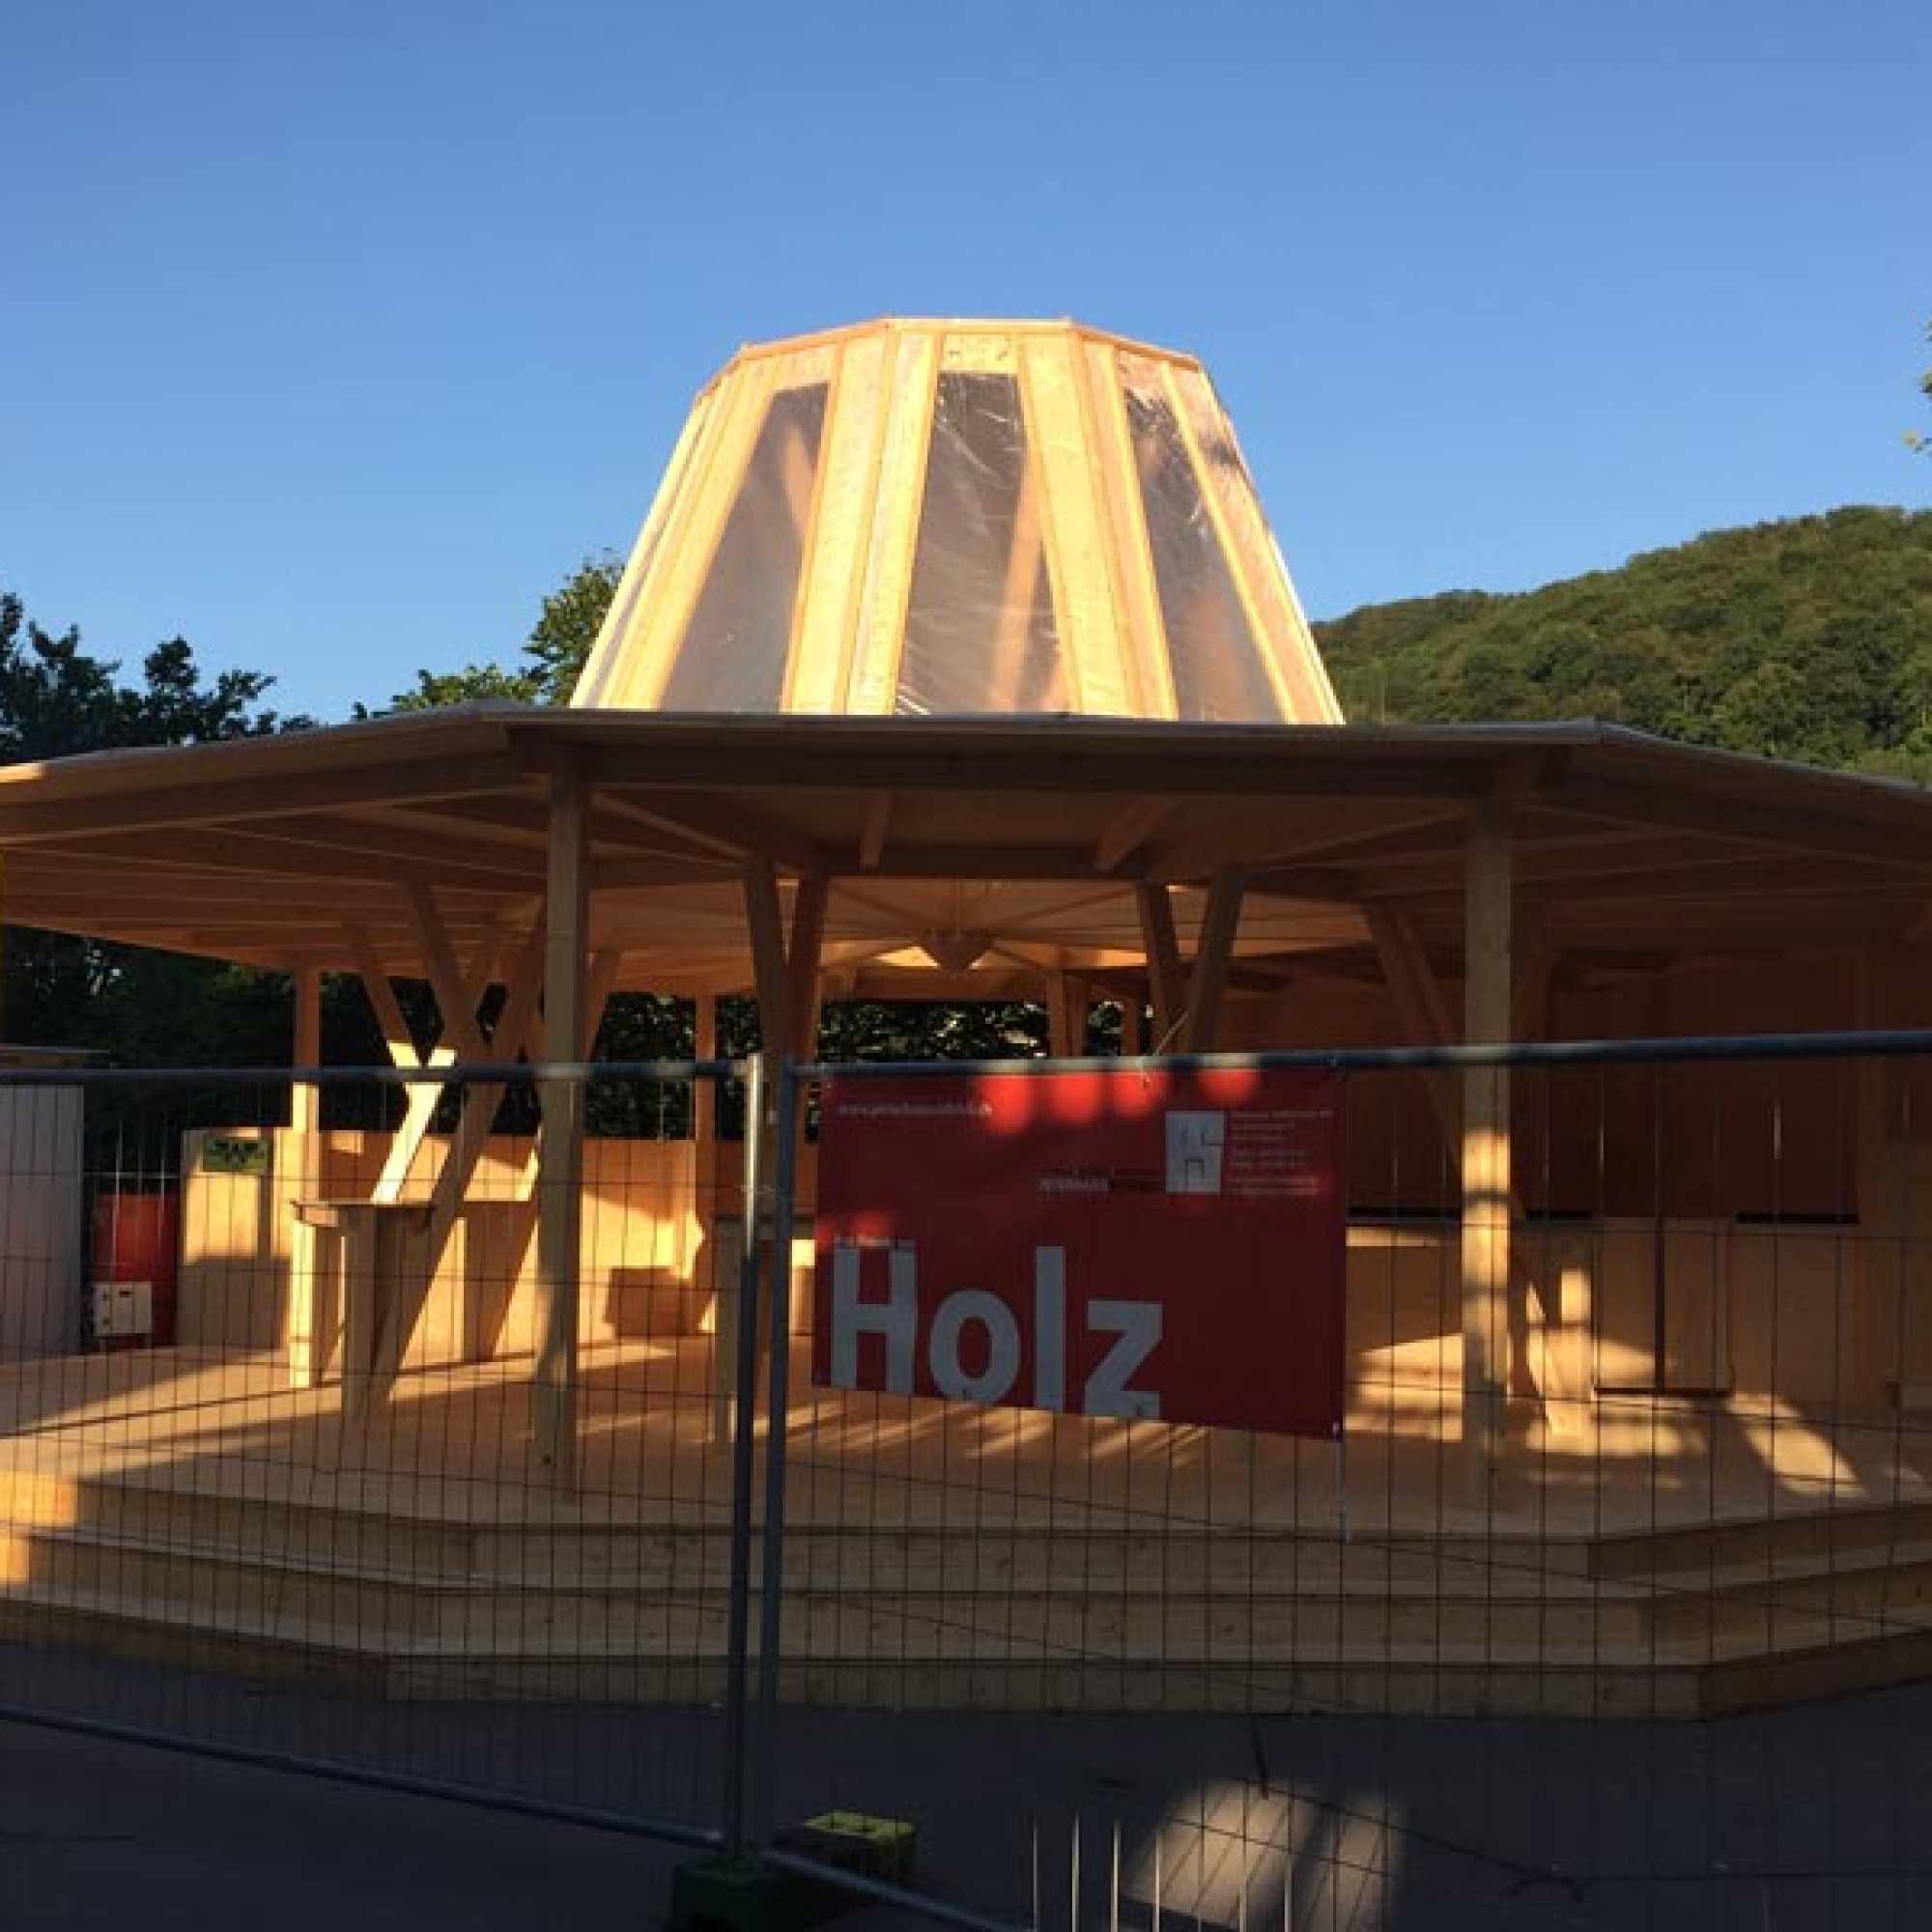 Kulturkuppel am Bahnhofplatz: In Anlehnung an Mario Botta und seine Kuppel entstand das Bistro de la Presse. (Alle Fotos: Charles Vanhouteghem)